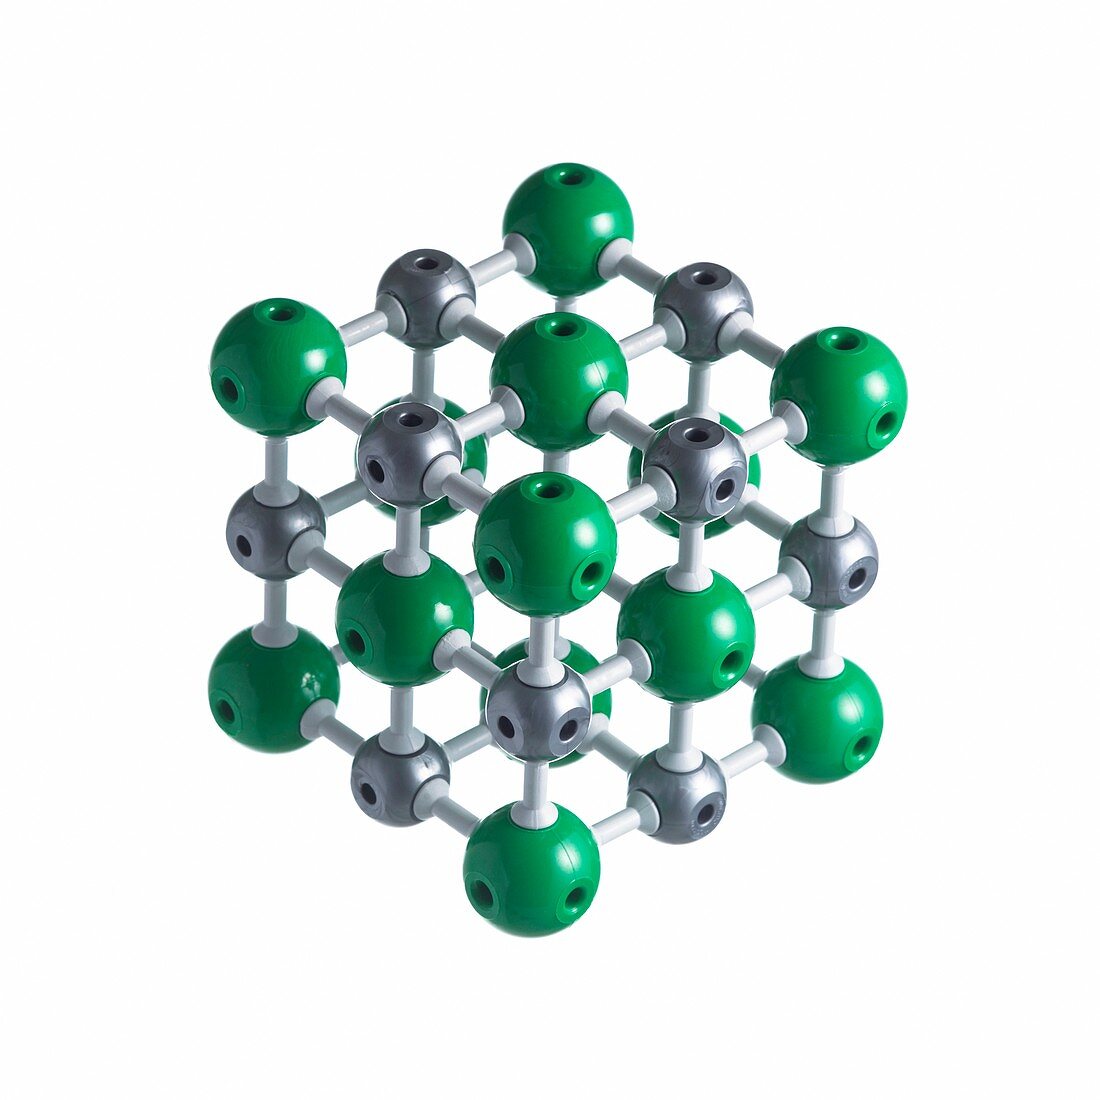 Sodium chloride lattice